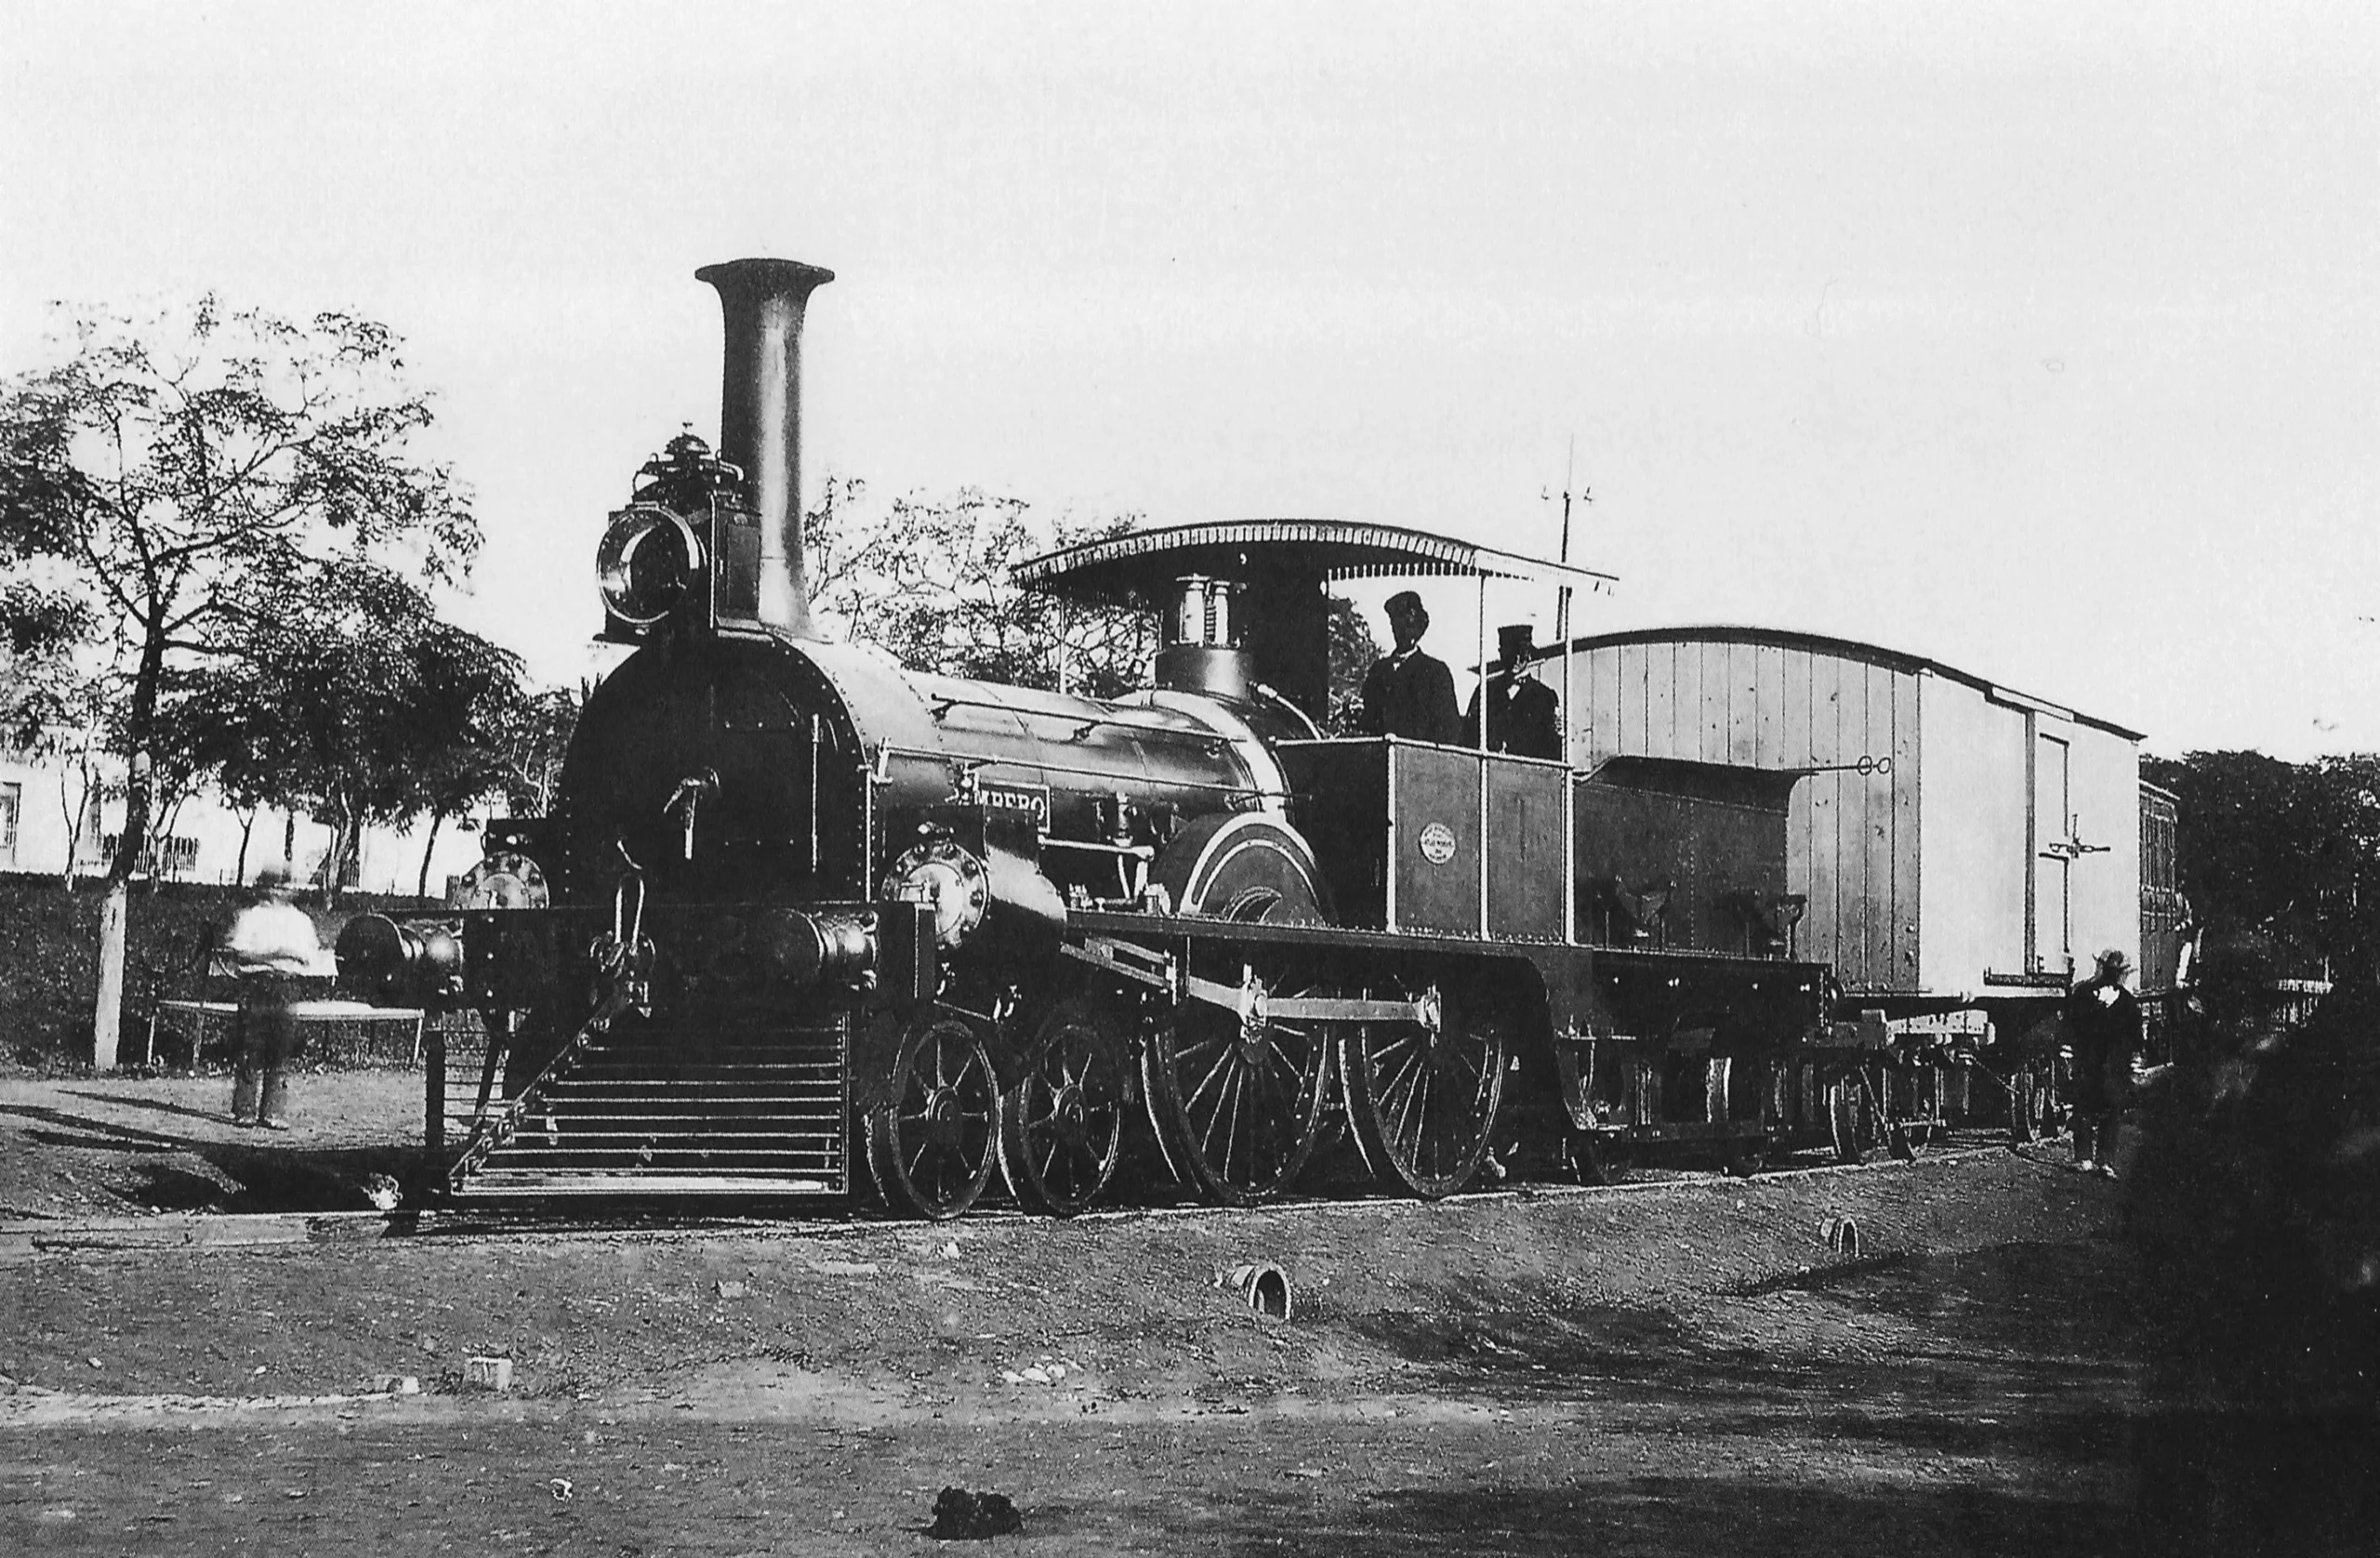 historia del ferrocarril en argentina resumen - Cuando surgio el ferrocarril en Argentina